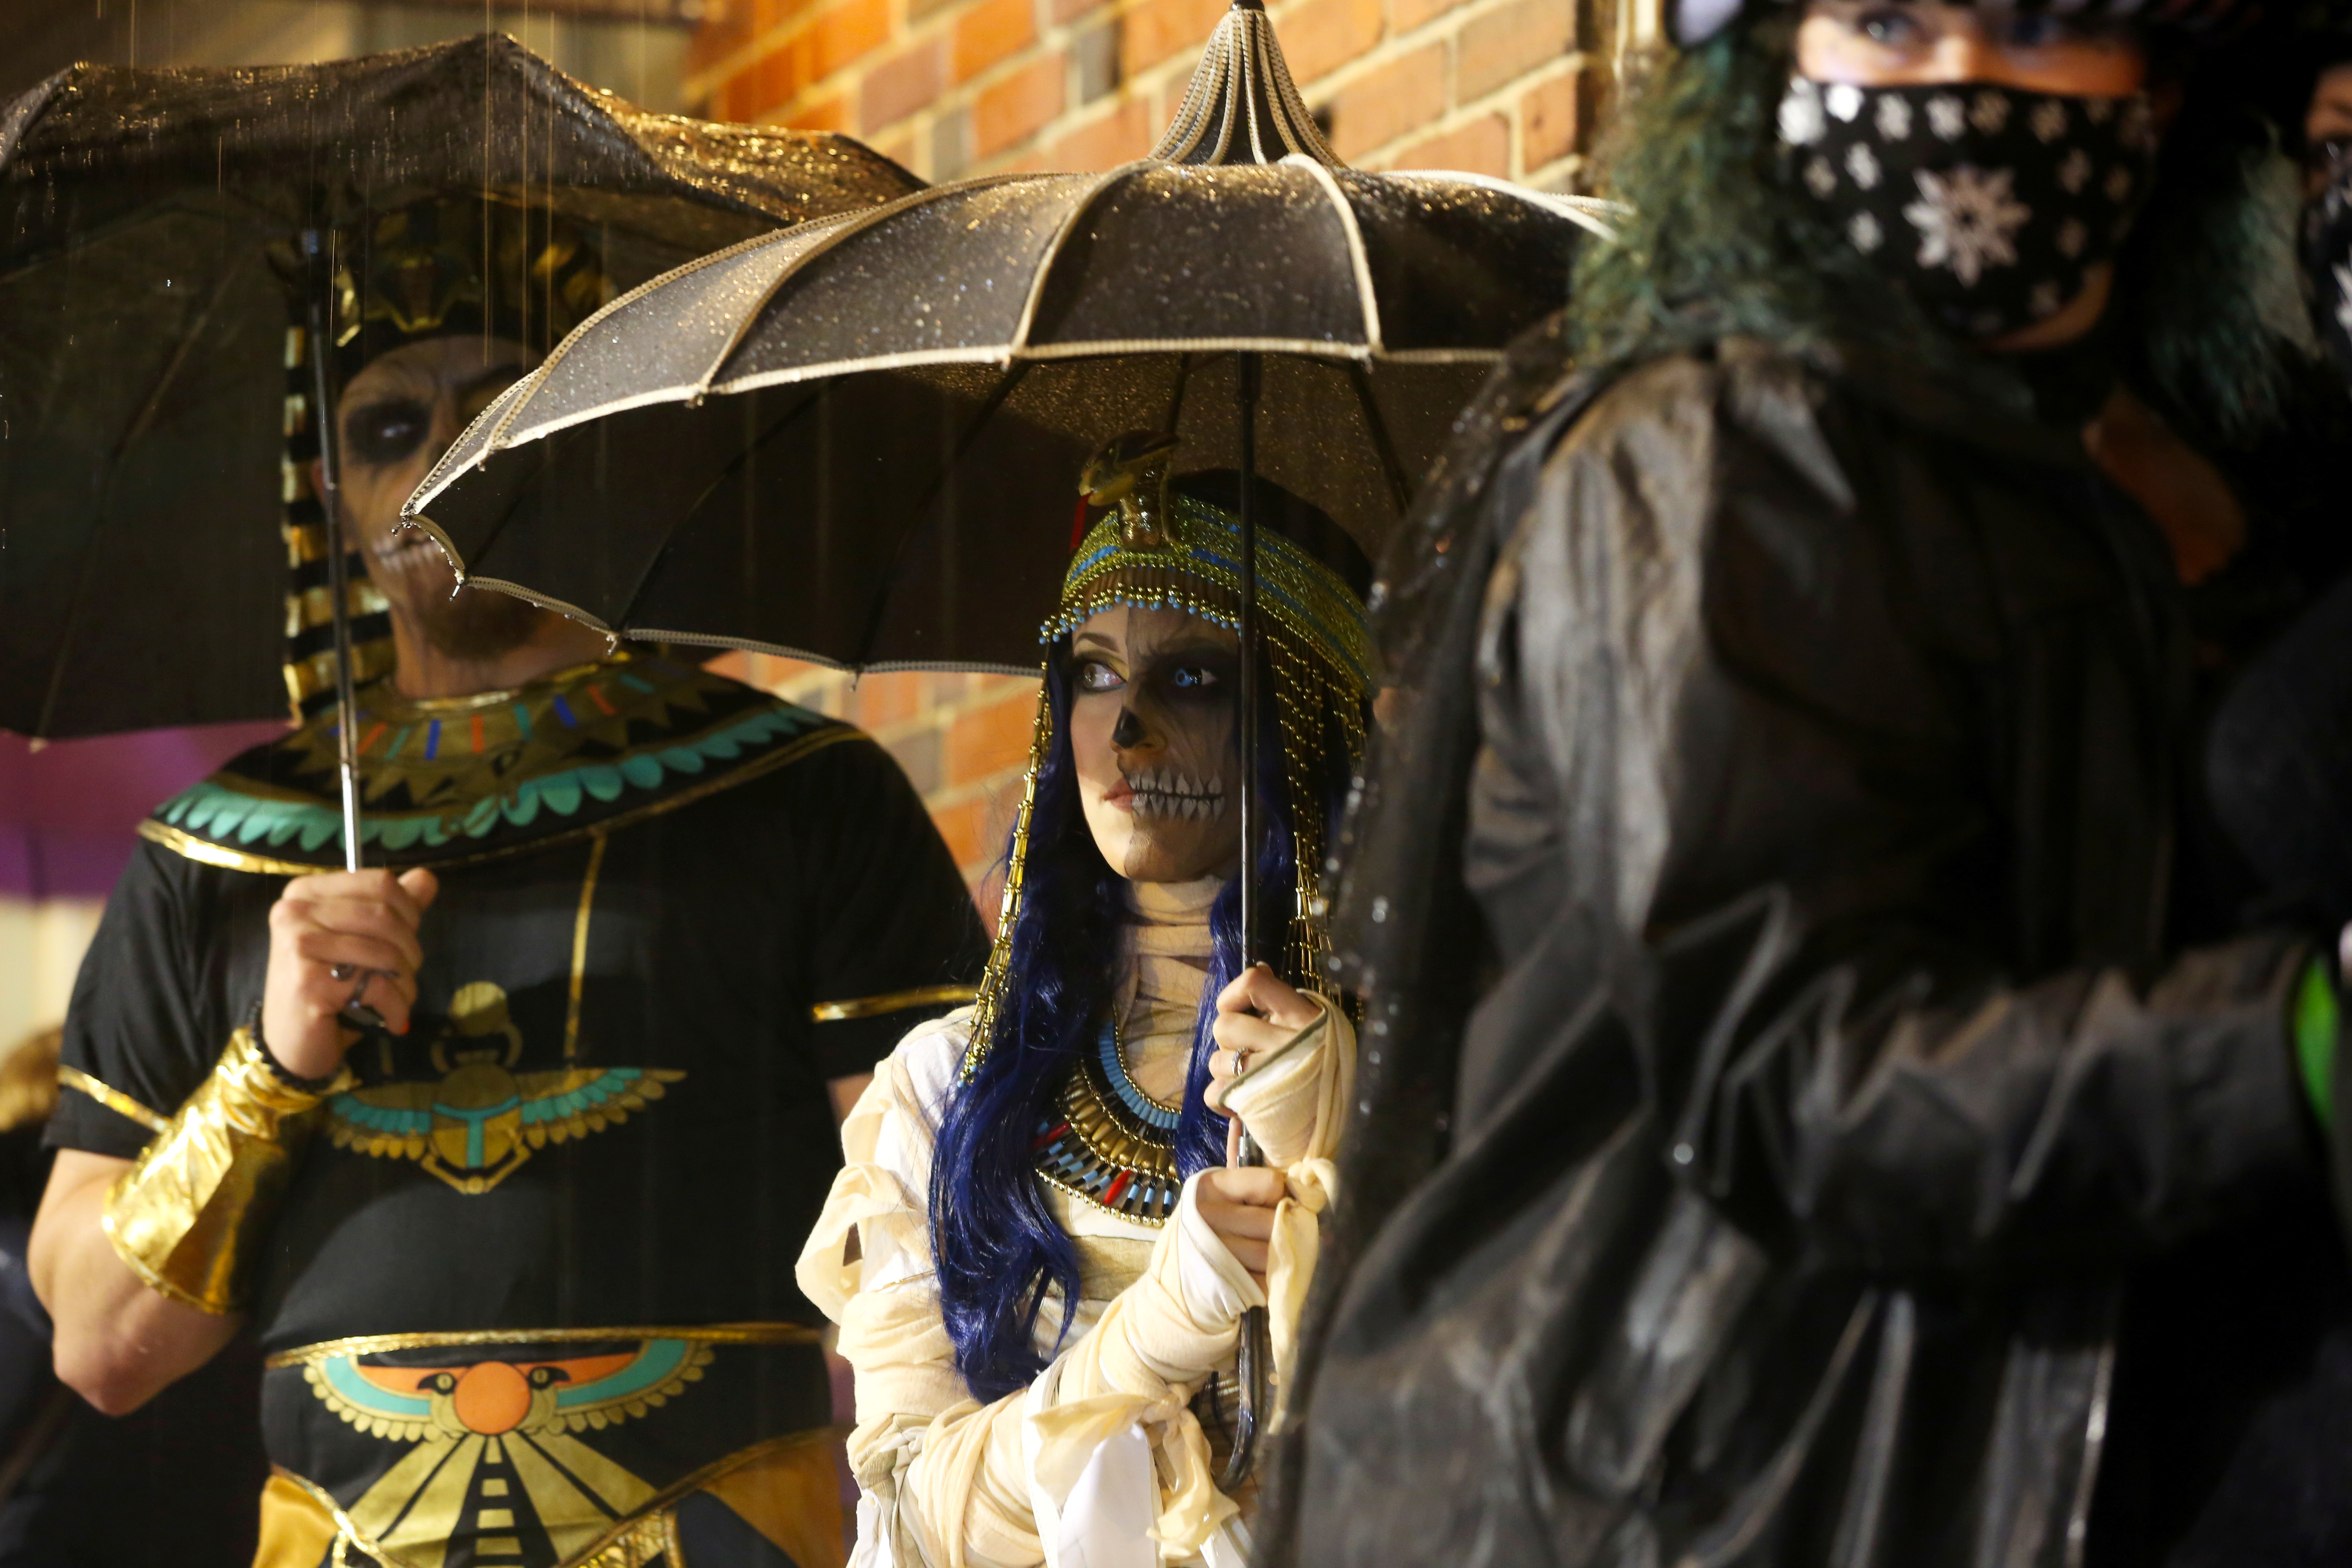 Personas disfrazadas esperan bajo la lluvia para ingresar al baile oficial de Halloween de las brujas de Salem, en Massachusetts, EE. UU., 30 de octubre de 2021. REUTERS/Reba Saldanha